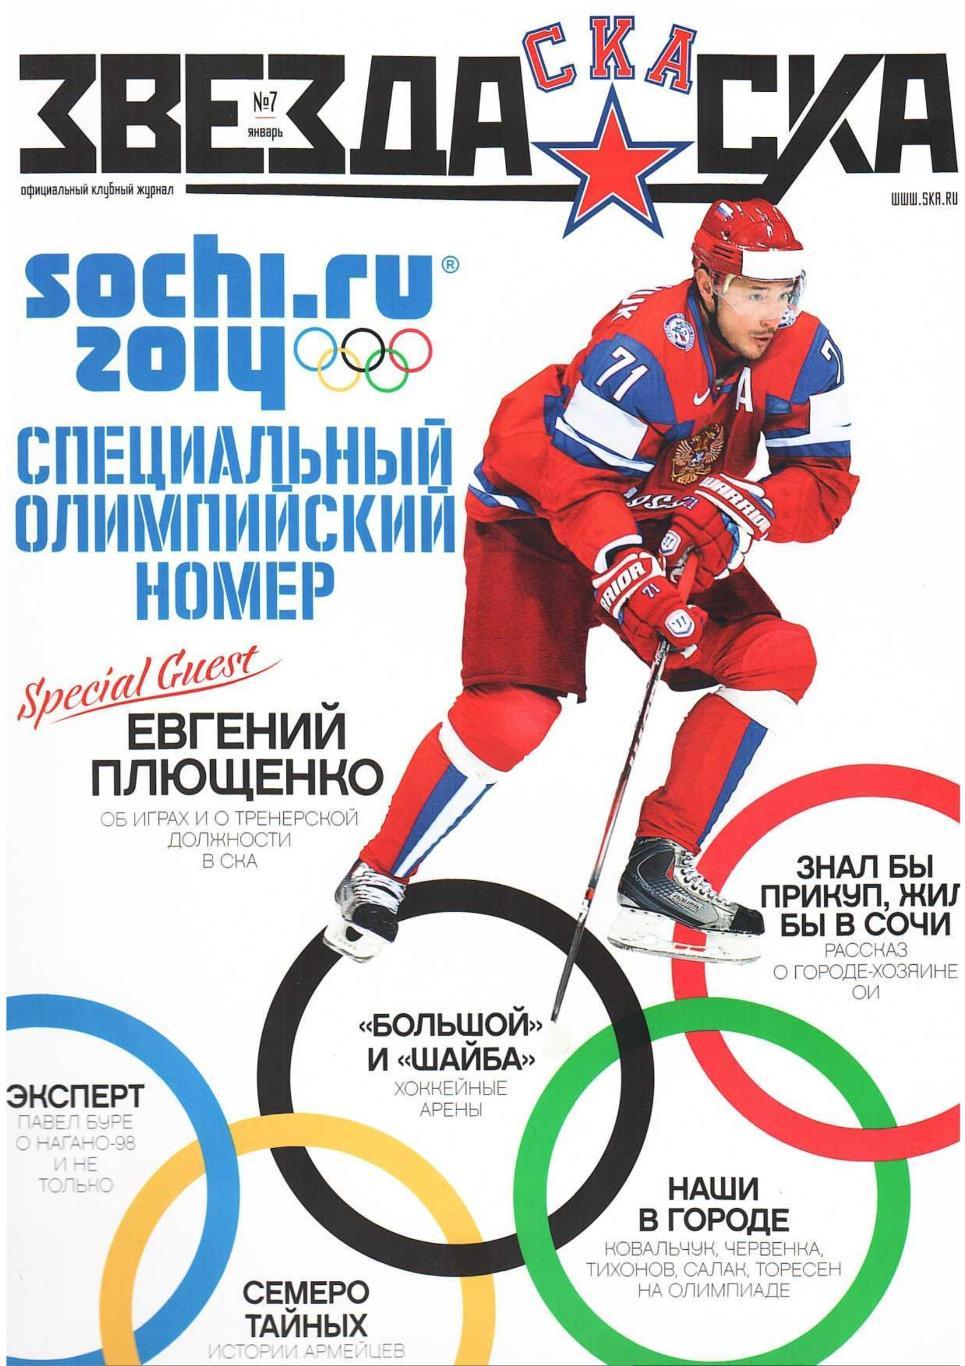 Хоккей. Звезда СКА. № 7, январь 2014. Официальный клубный журнал СКА (Санкт-Пете